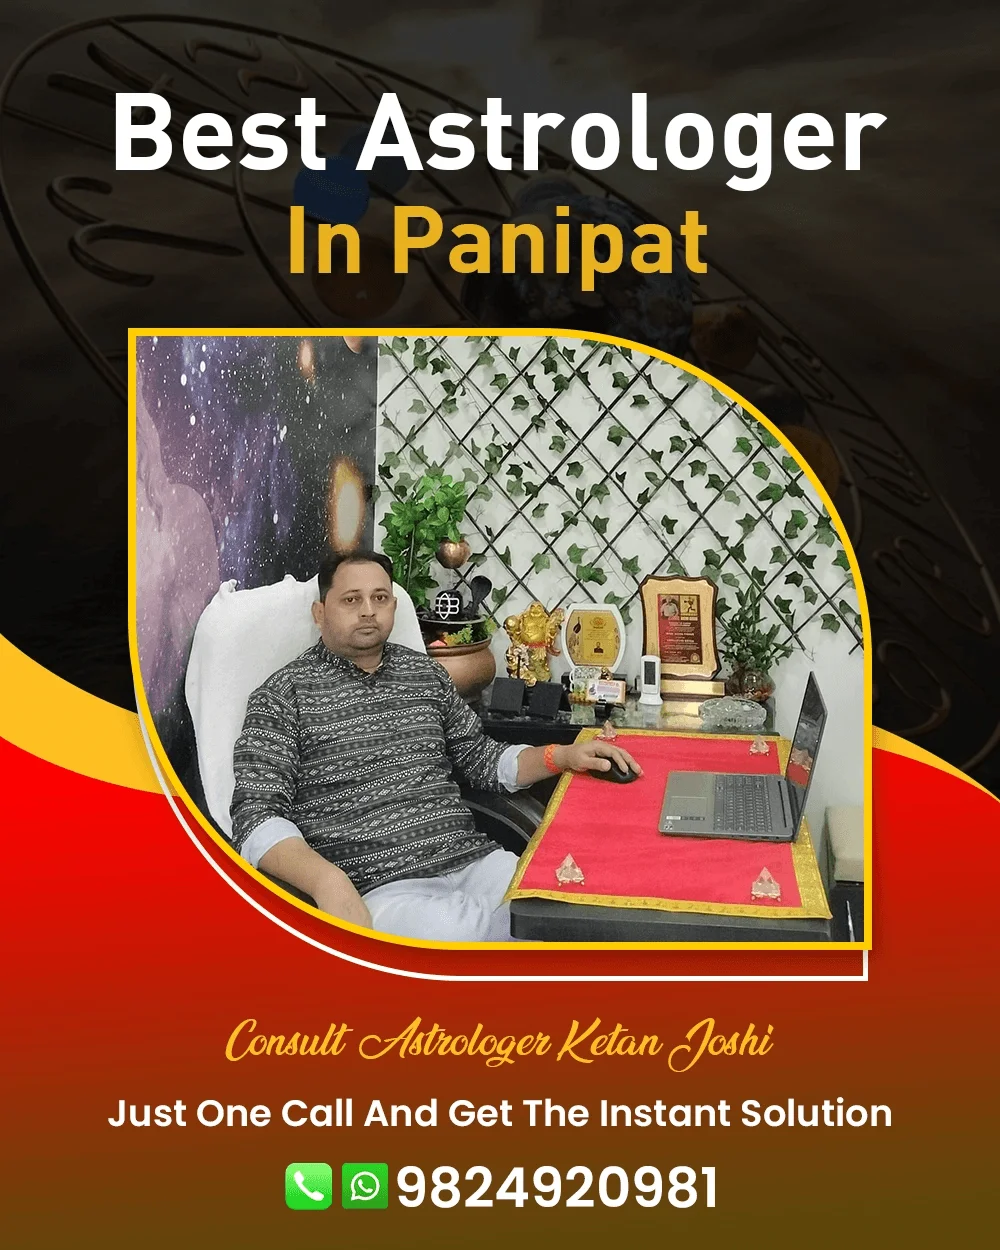 Best Astrologer In Panipat